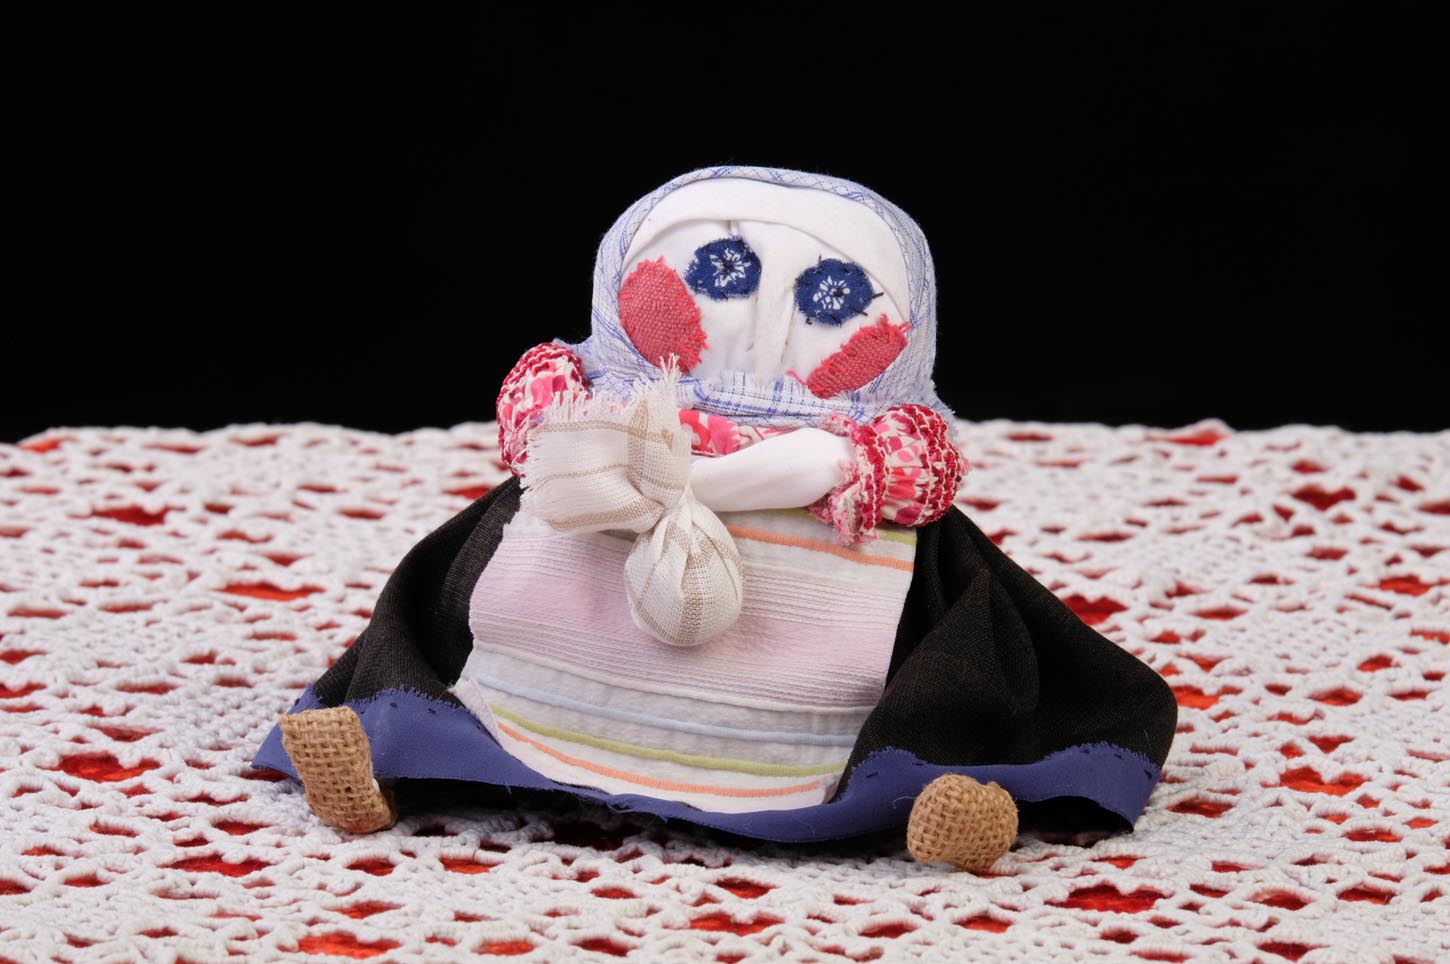 Кукла-мешочек
  Бабушка с узелком
  
  
  Ситец,
  мешковина, лен, 31 см, кукла-мешочек